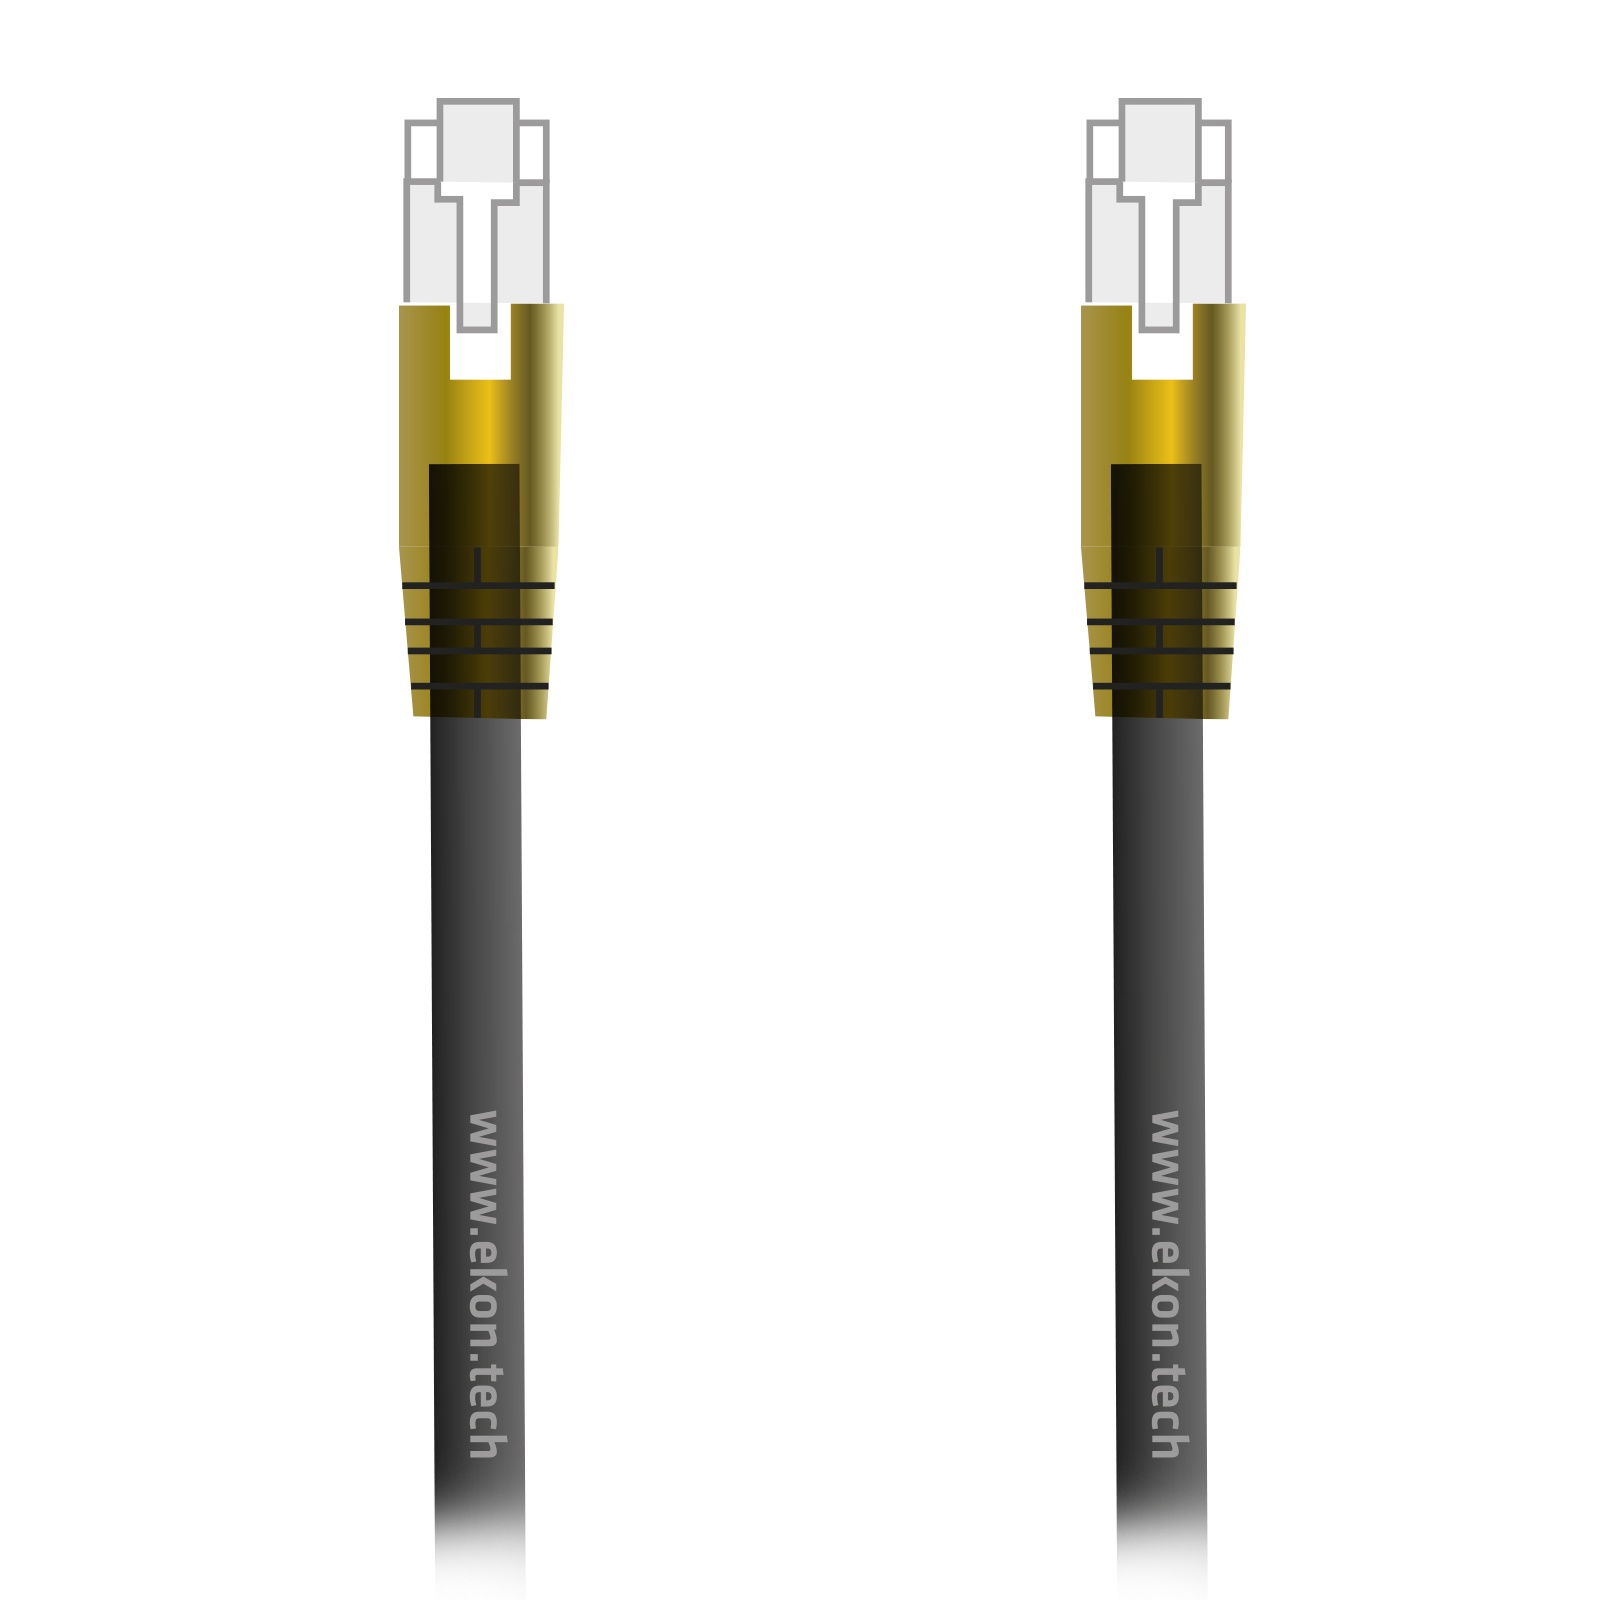 EKON UTP patch cable CAT 7 grey color, golden RJ45 connectors, cable length 3 m